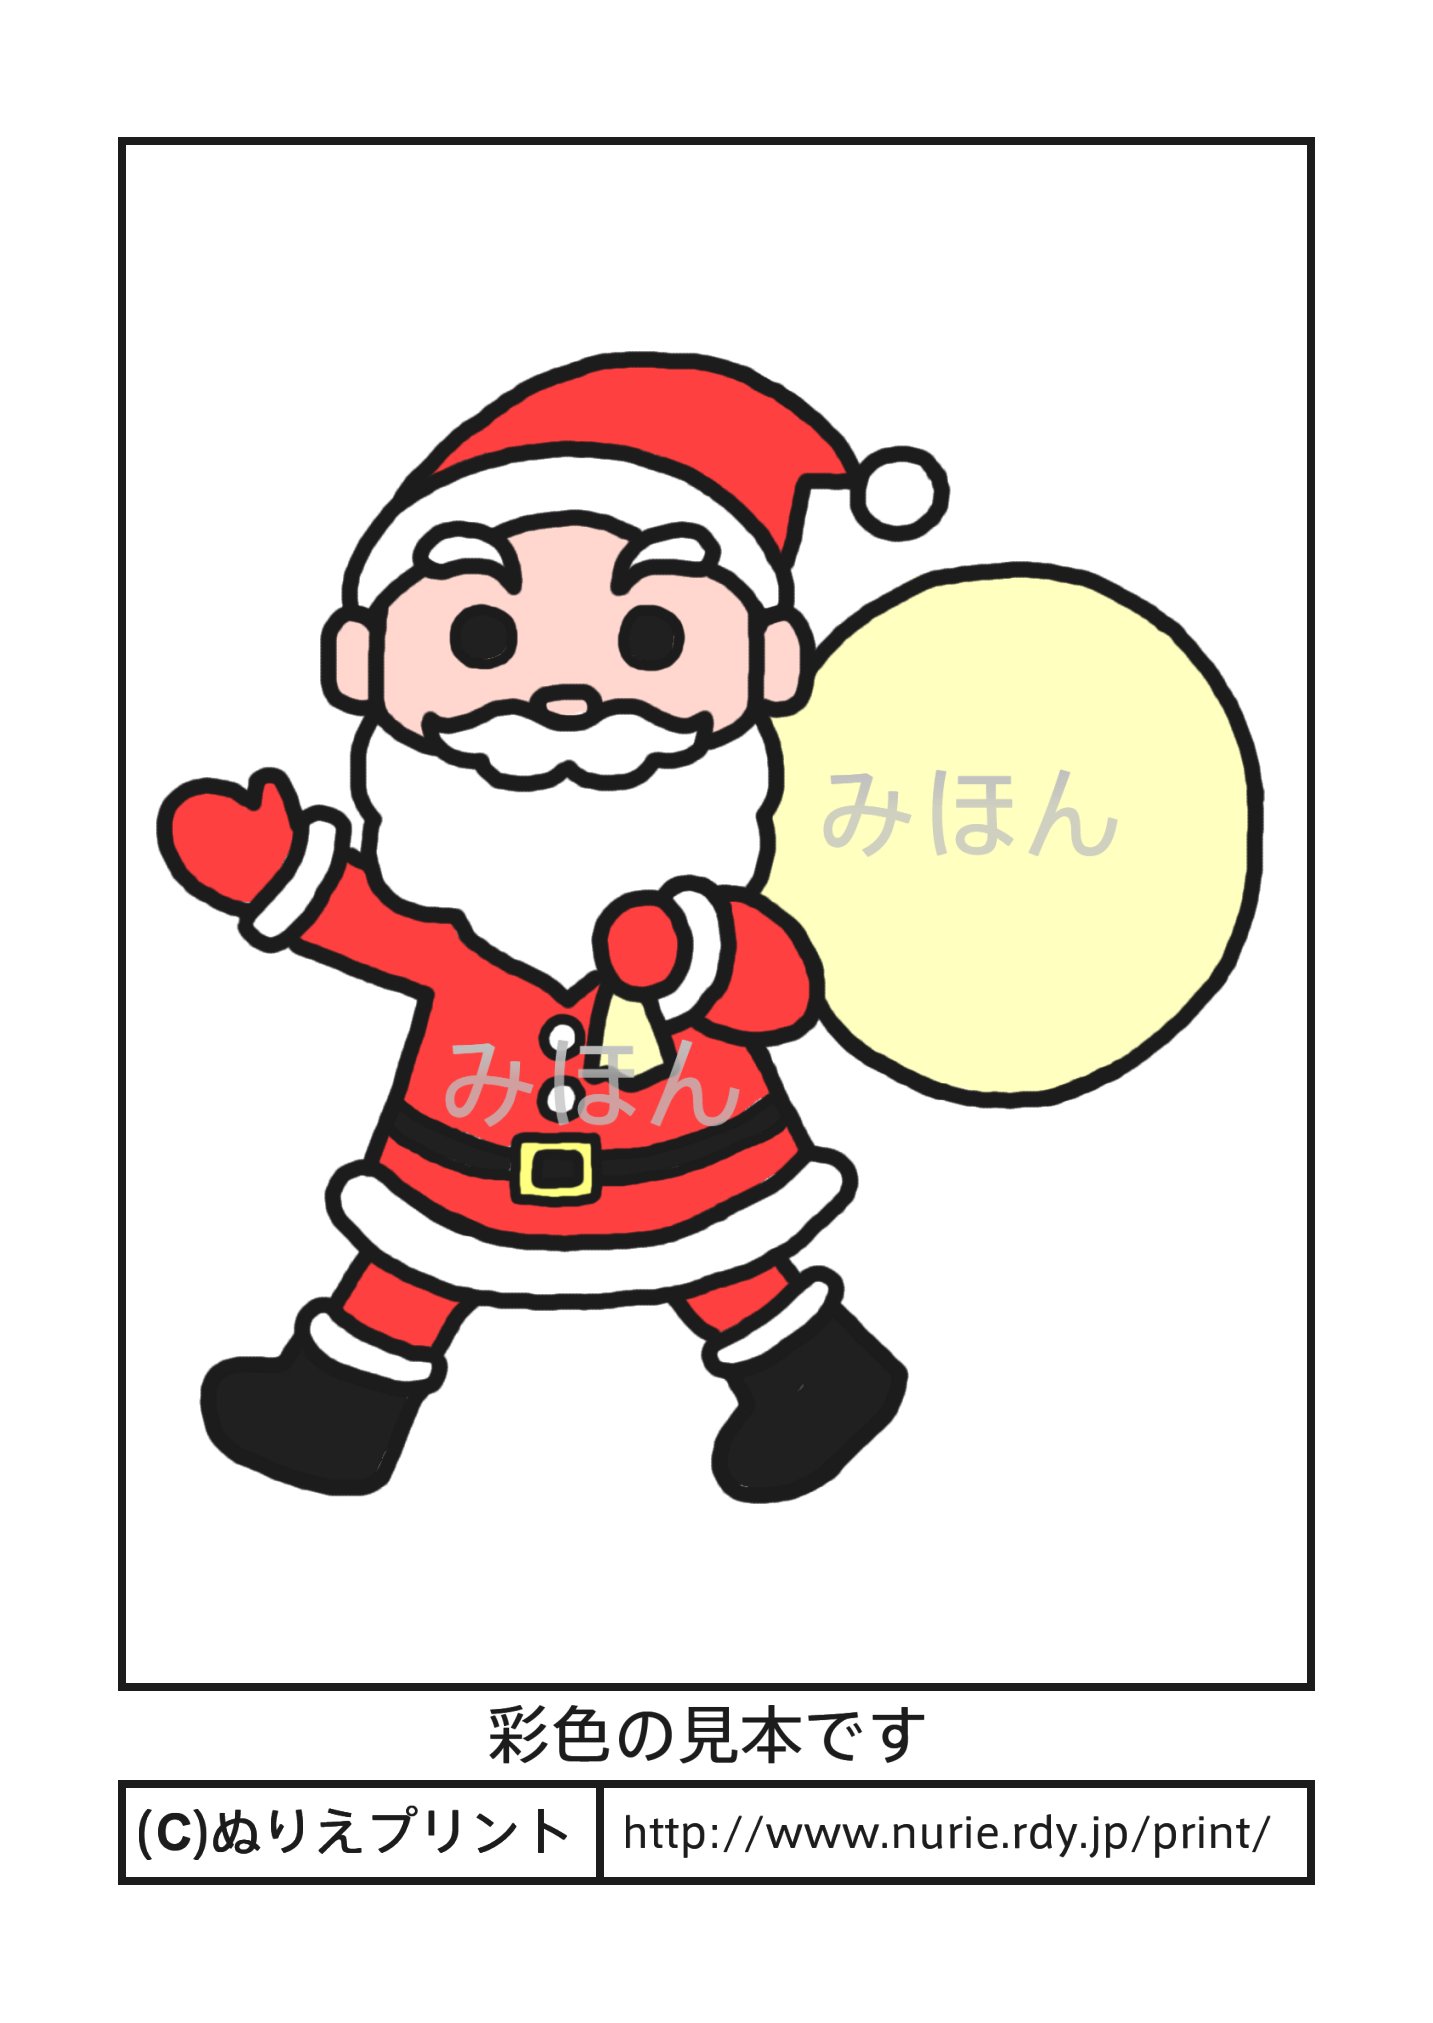 サンタクロース(彩色見本)/クリスマス/冬の季節・行事/こどものぬりえ【ぬりえプリント】